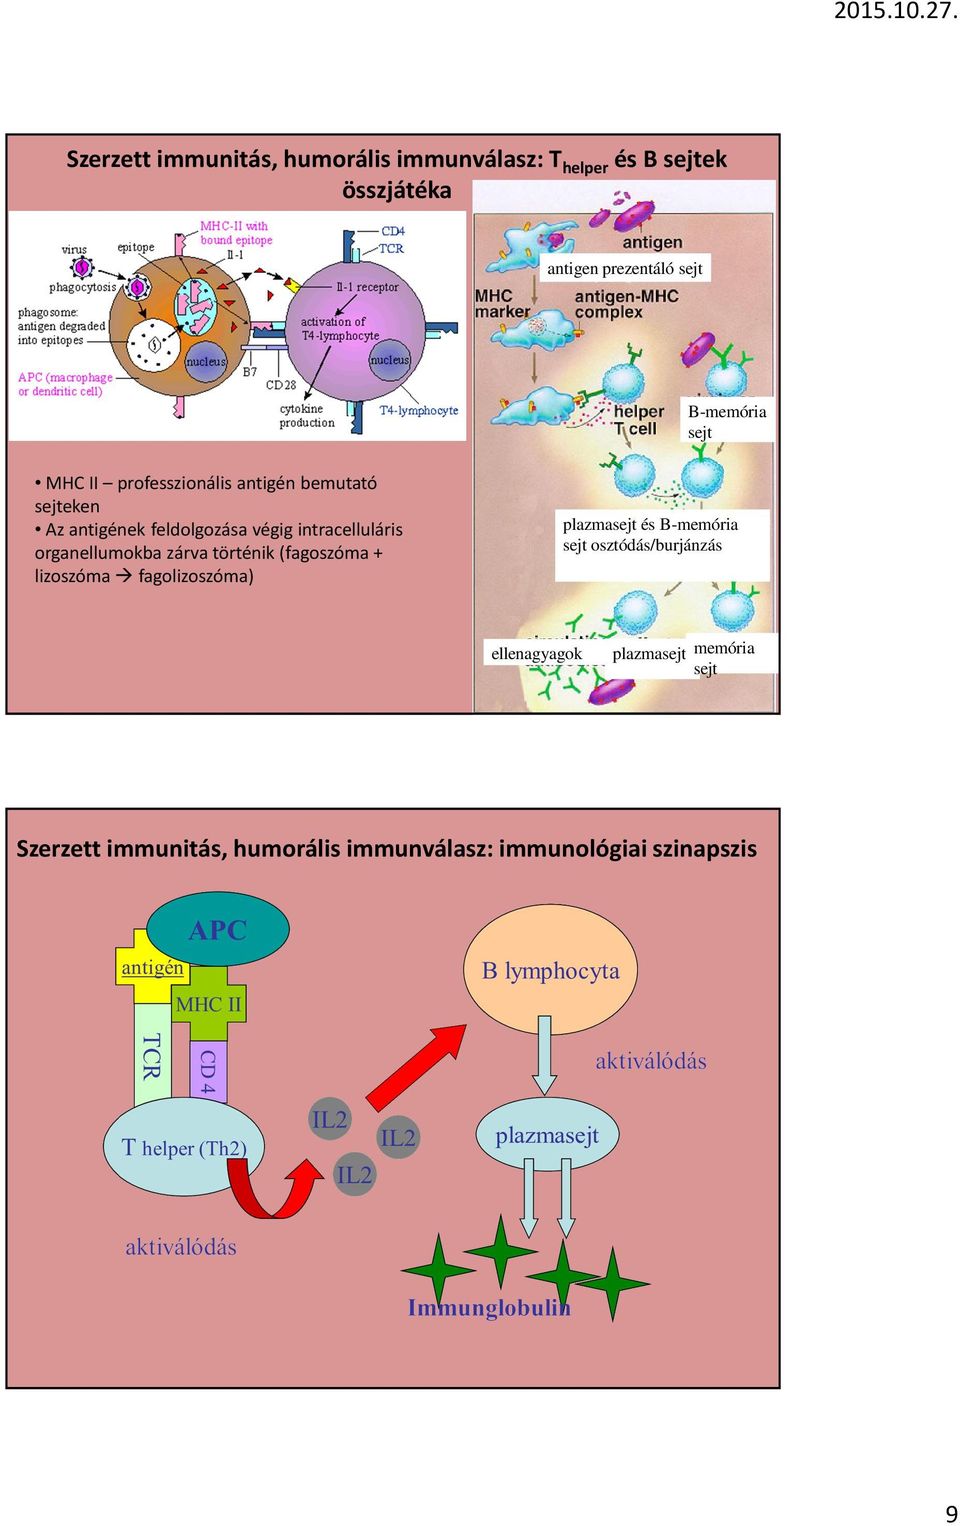 intracelluláris organellumokba zárva történik (fagoszóma + lizoszóma fagolizoszóma) plazmasejt és B-memória